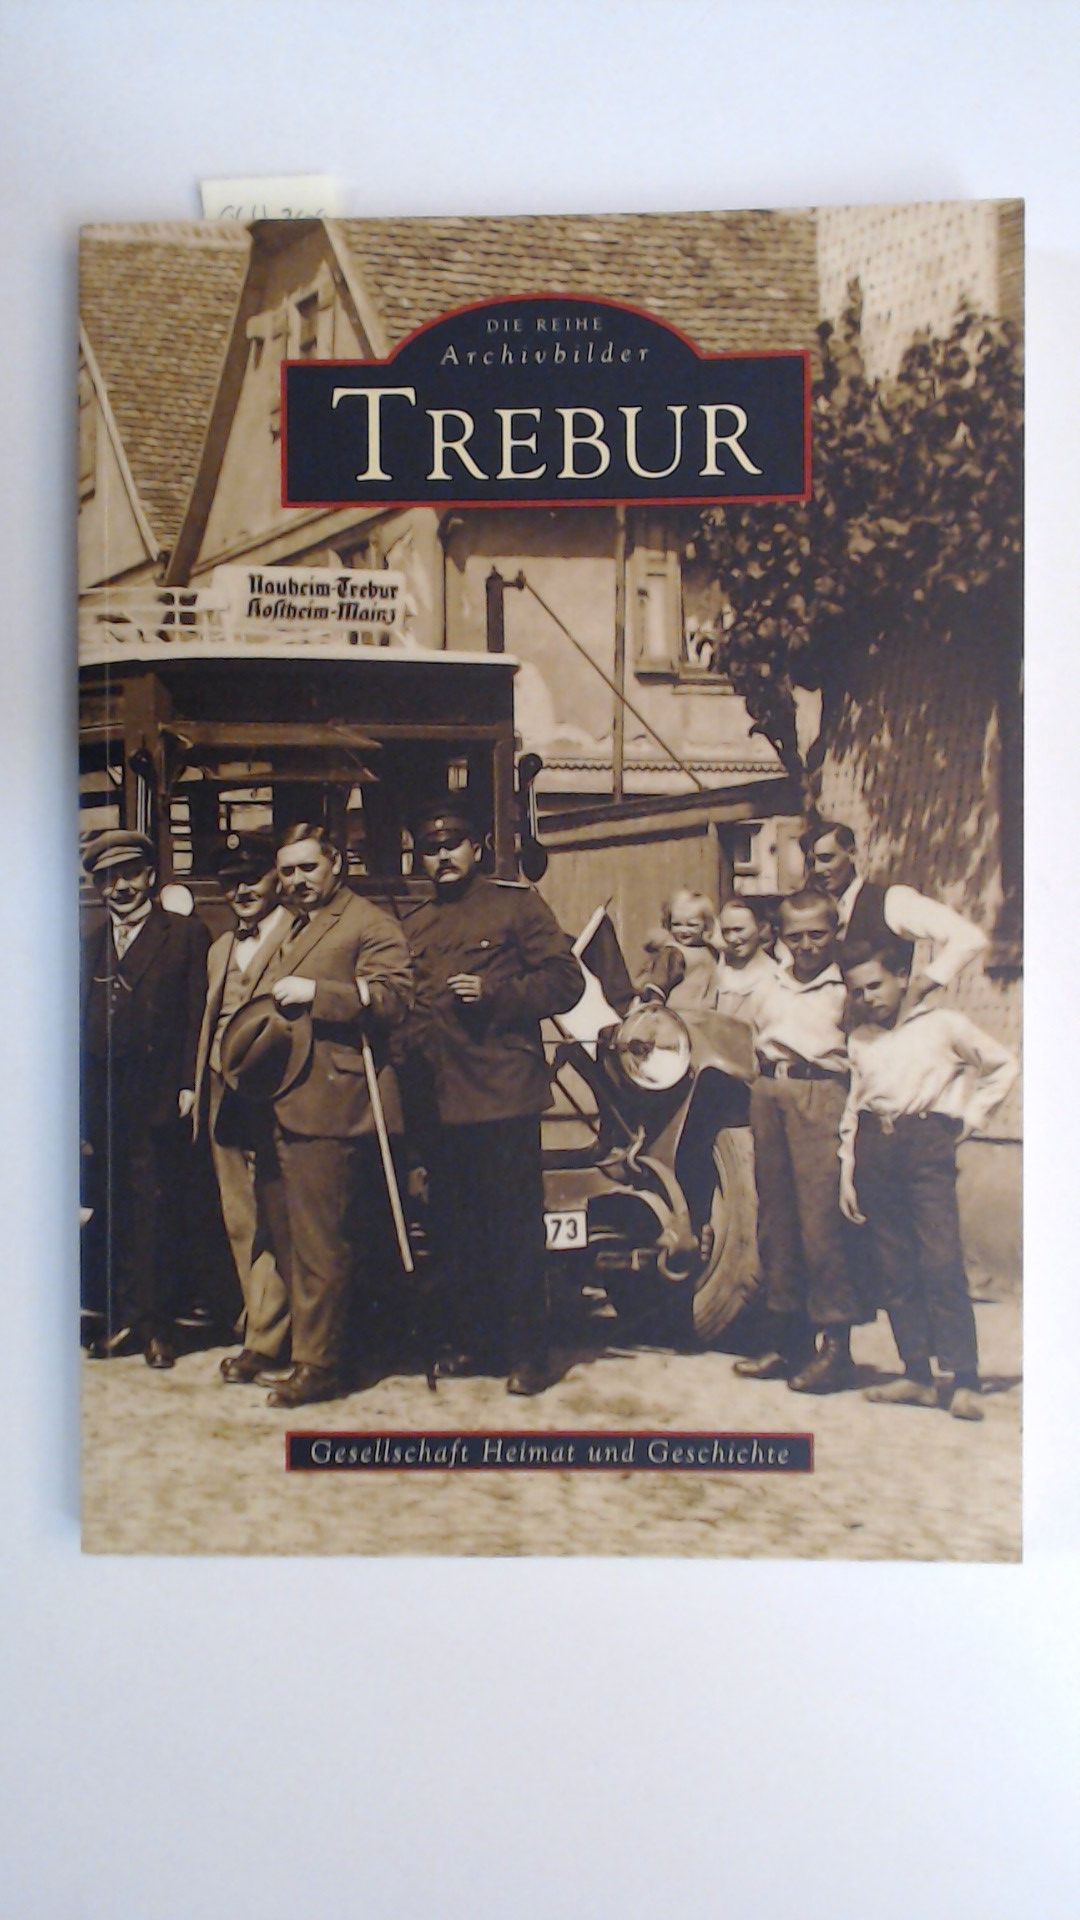 Trebur - Die Reihe Archivbilder, - Gesellschaft Heimat und Geschichte